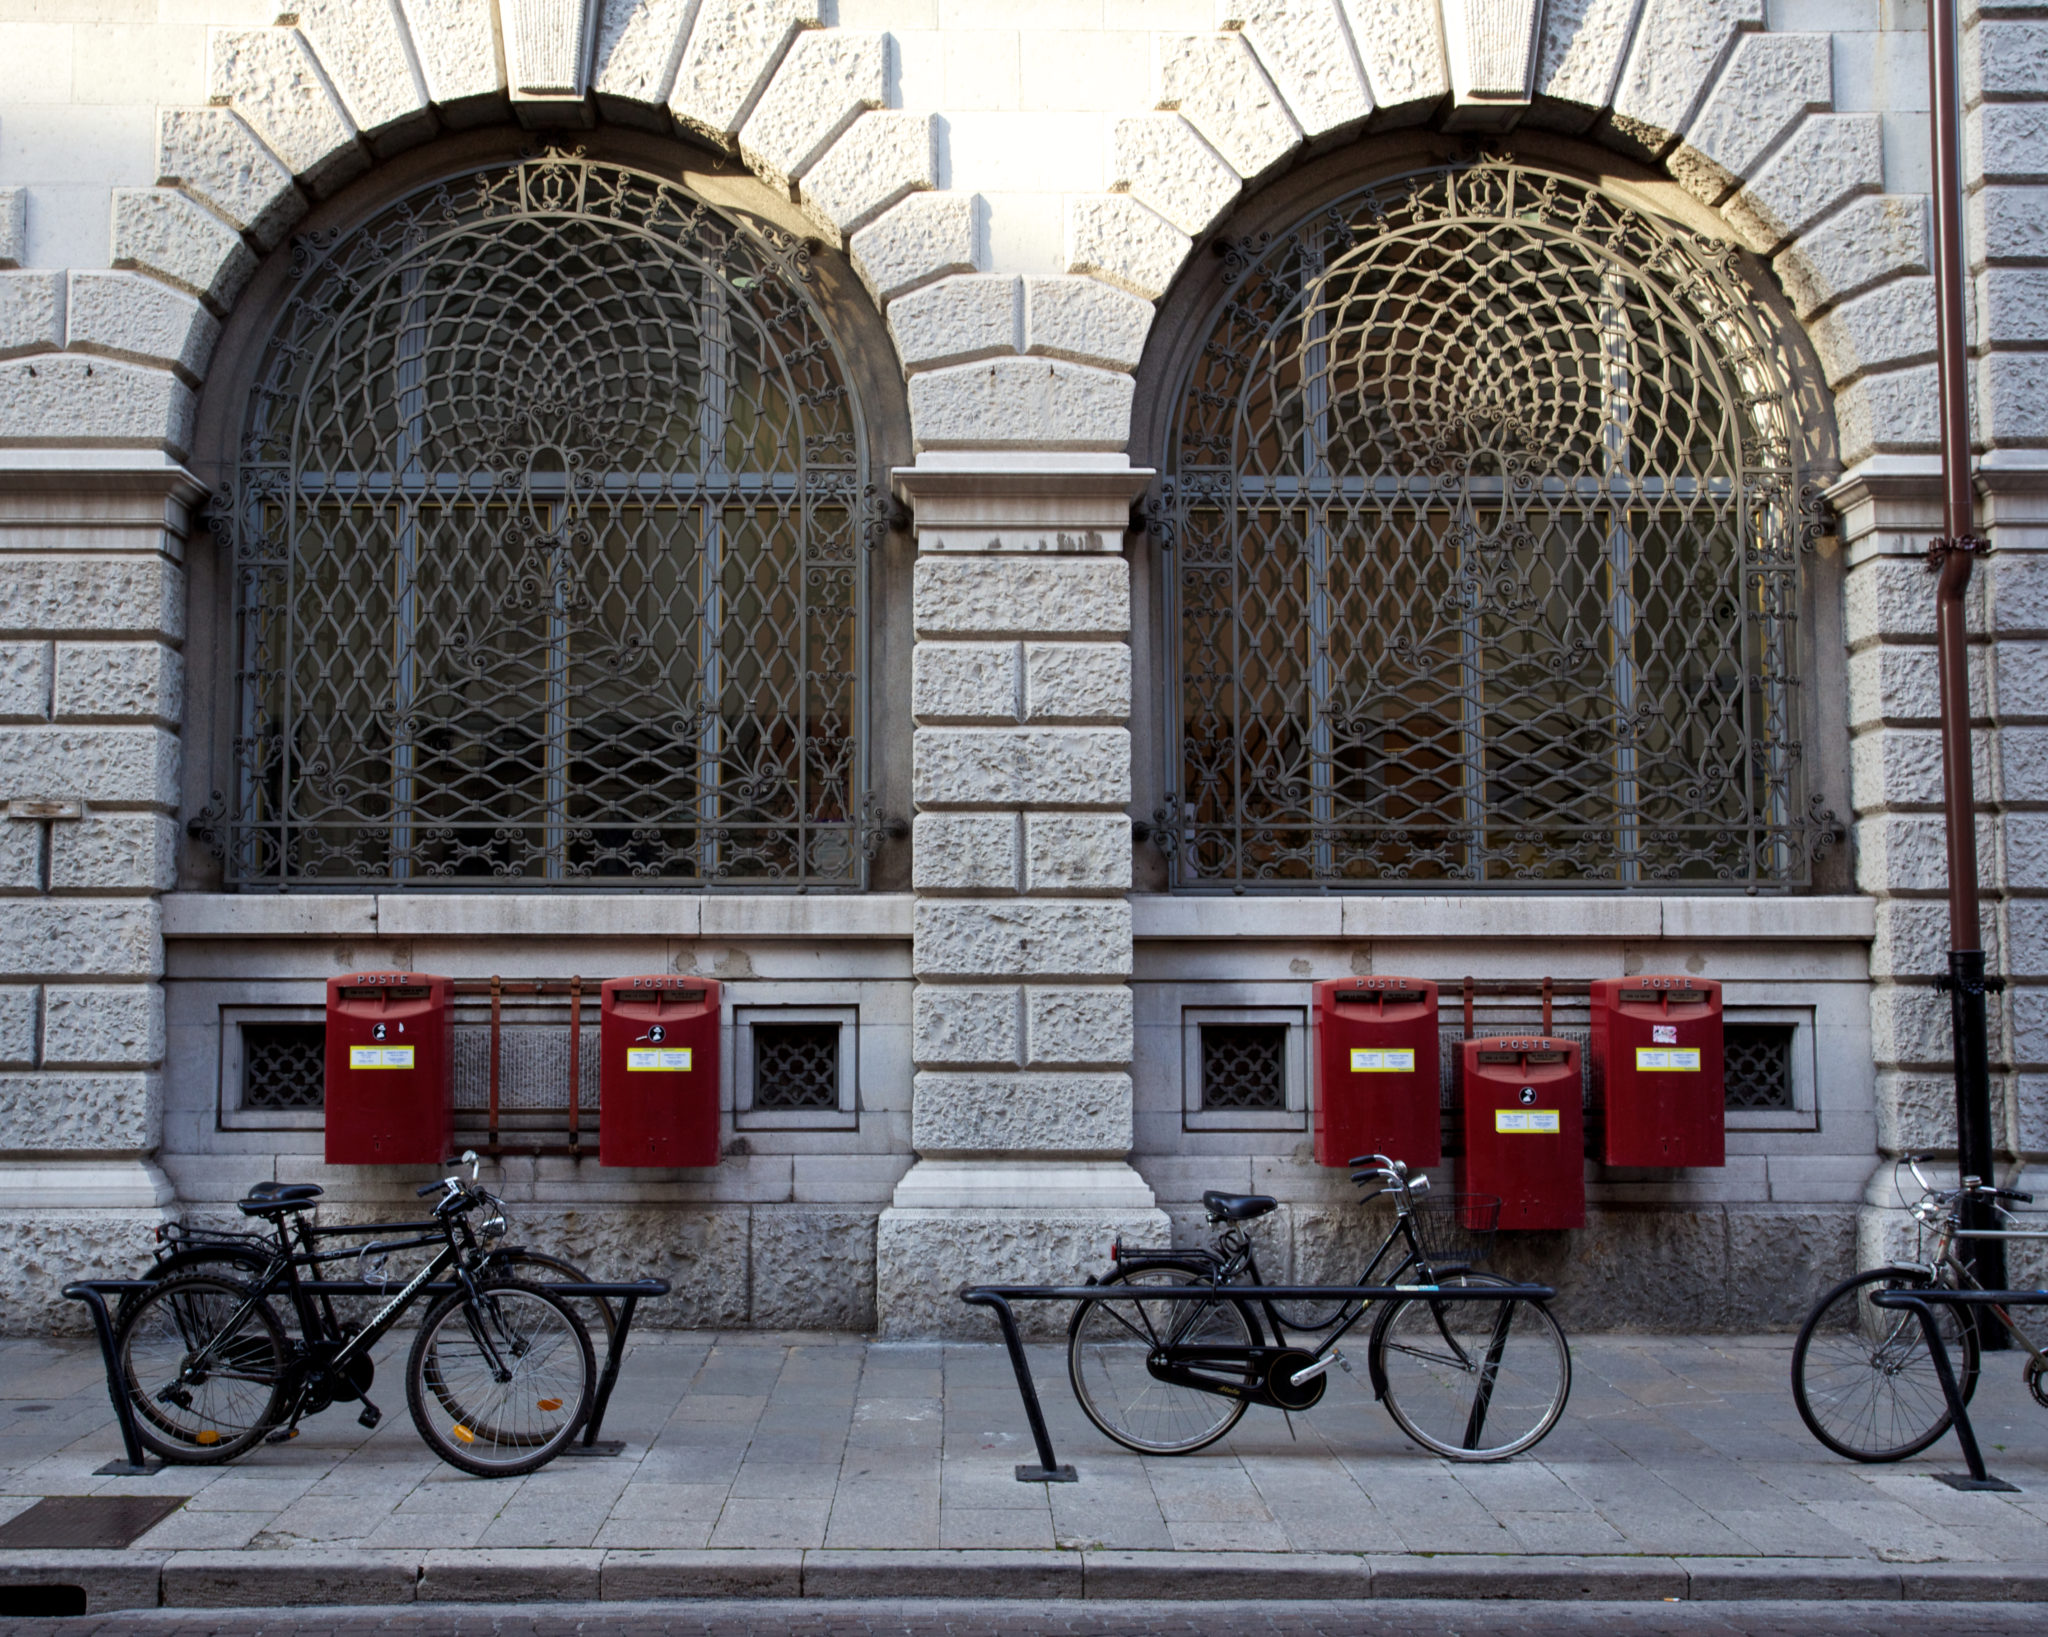 Librerie, piazze storiche e pasticcerie passate alla storia di Udine da un punto di vista speciale: la sella e le due ruote di una bici